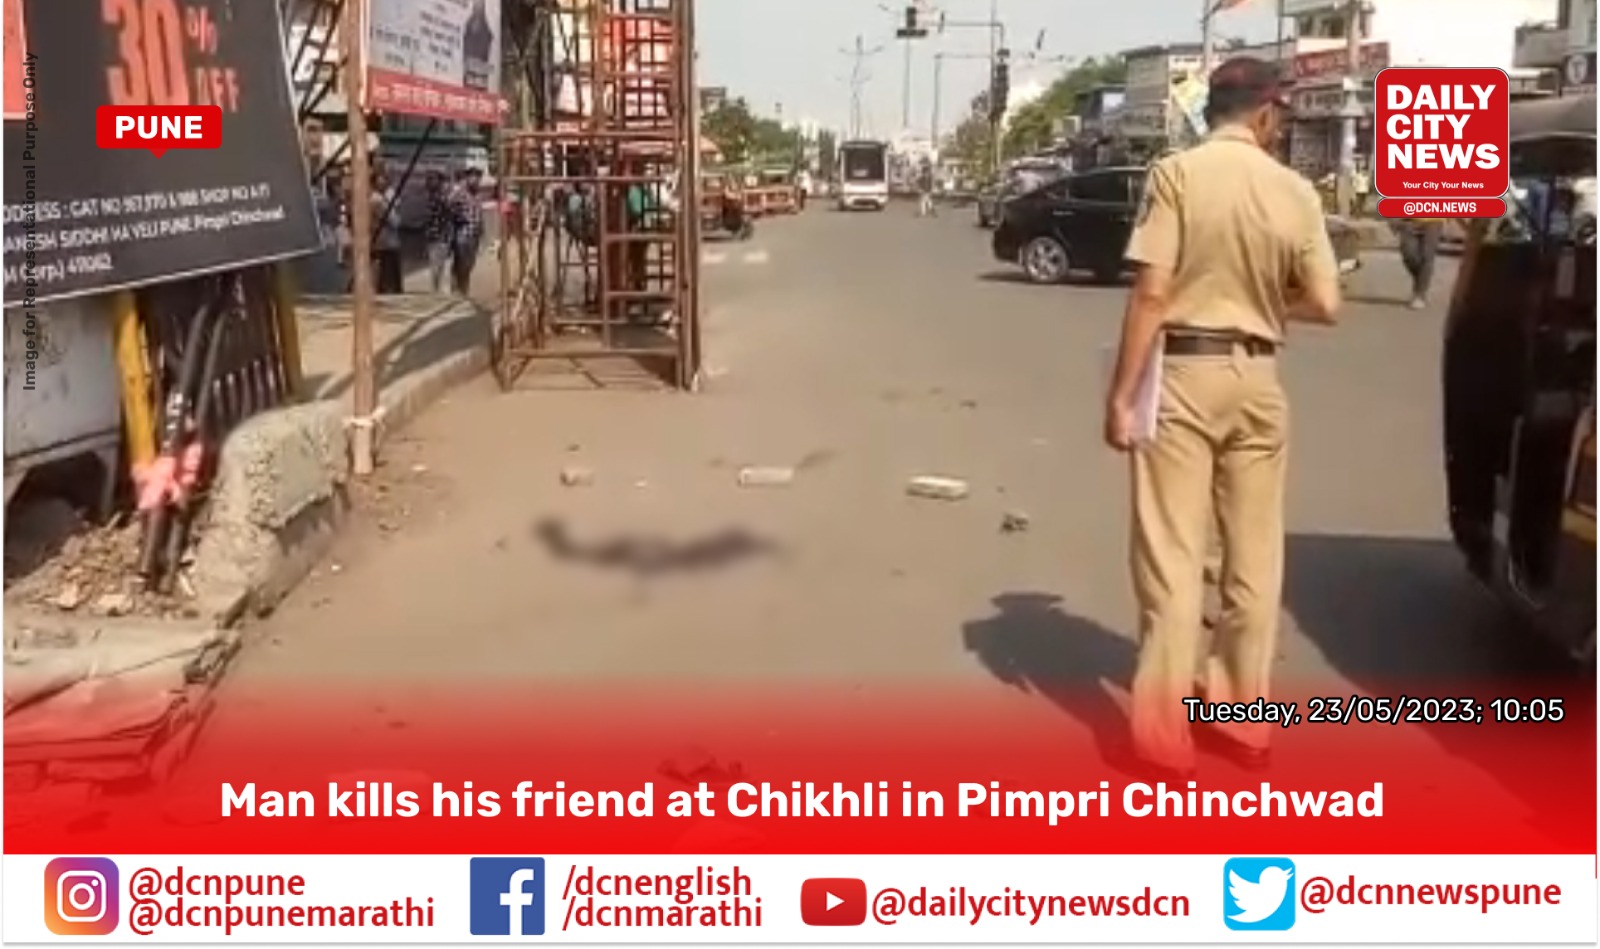 Man kills his own friend at Chikhli in Pimpri Chinchwad